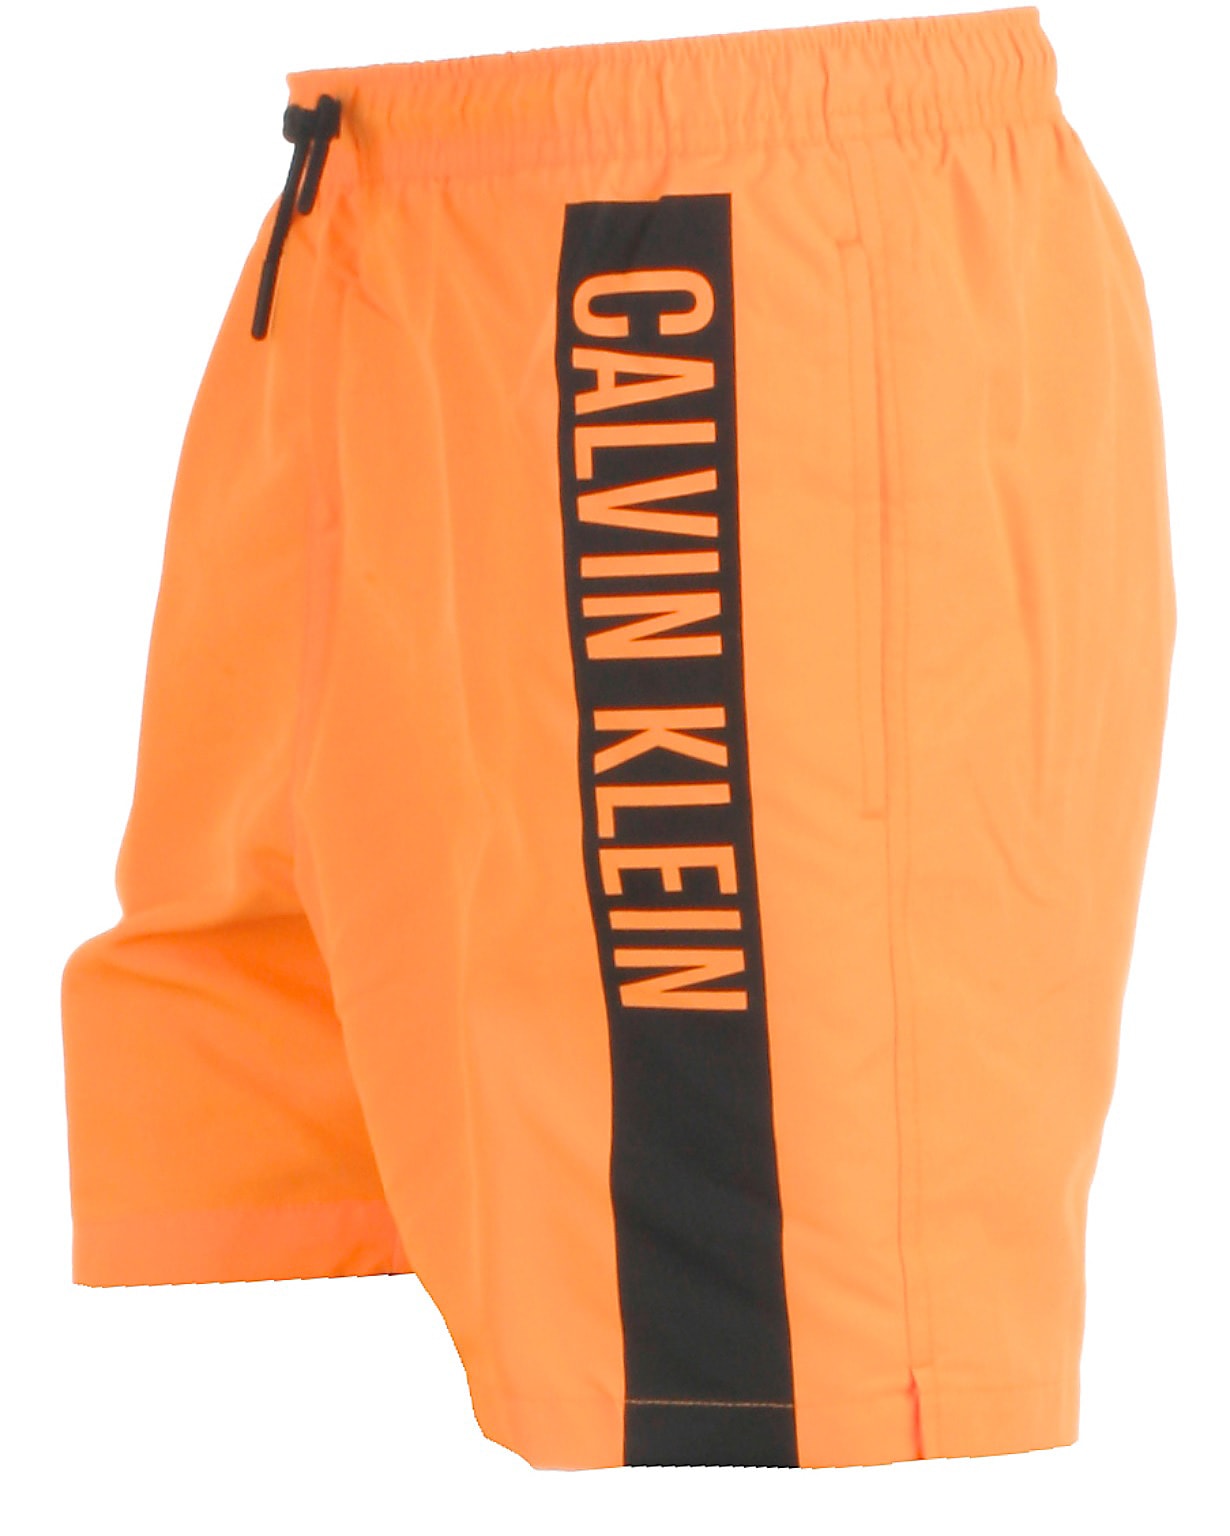 valg Lavet til at huske Perfervid Calvin Klein badeshorts, orange. Badetøj fra kvalitetsmærker til de unge!